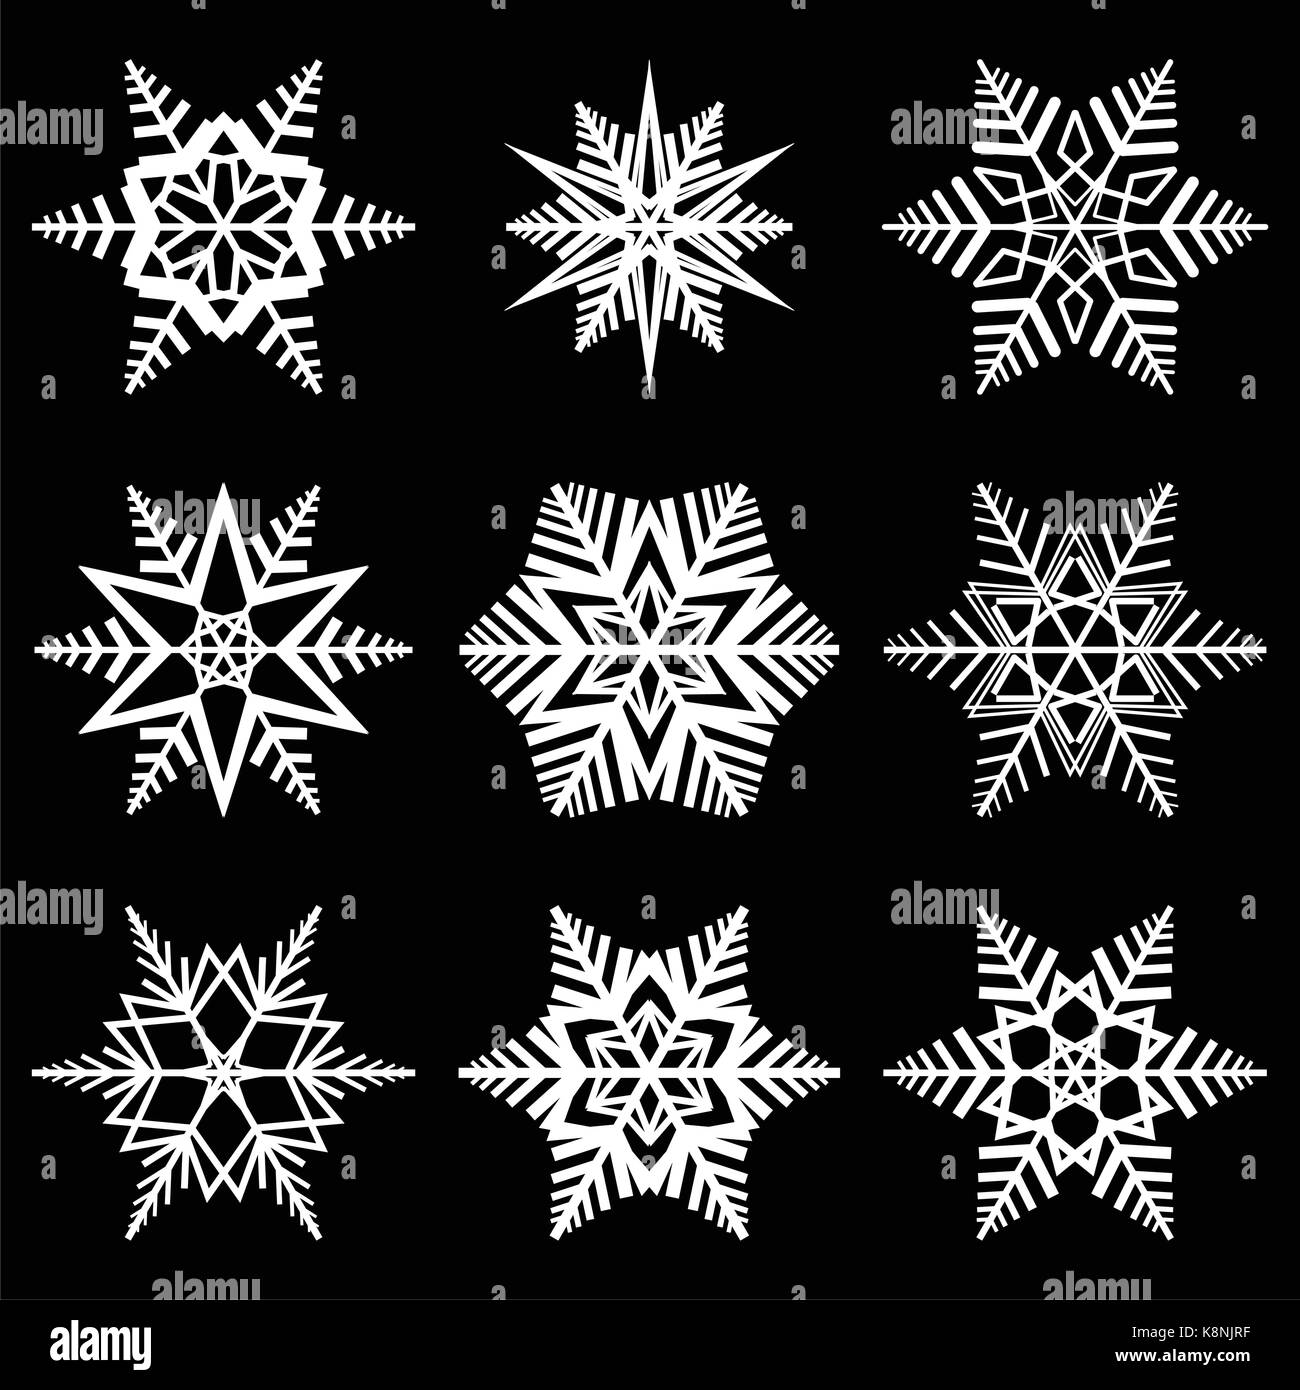 Schneeflocke vektor Symbol Silhouette Design. Weihnachten Winter Symbol Abbildung auf dem schwarzen Hintergrund isoliert. Stock Vektor